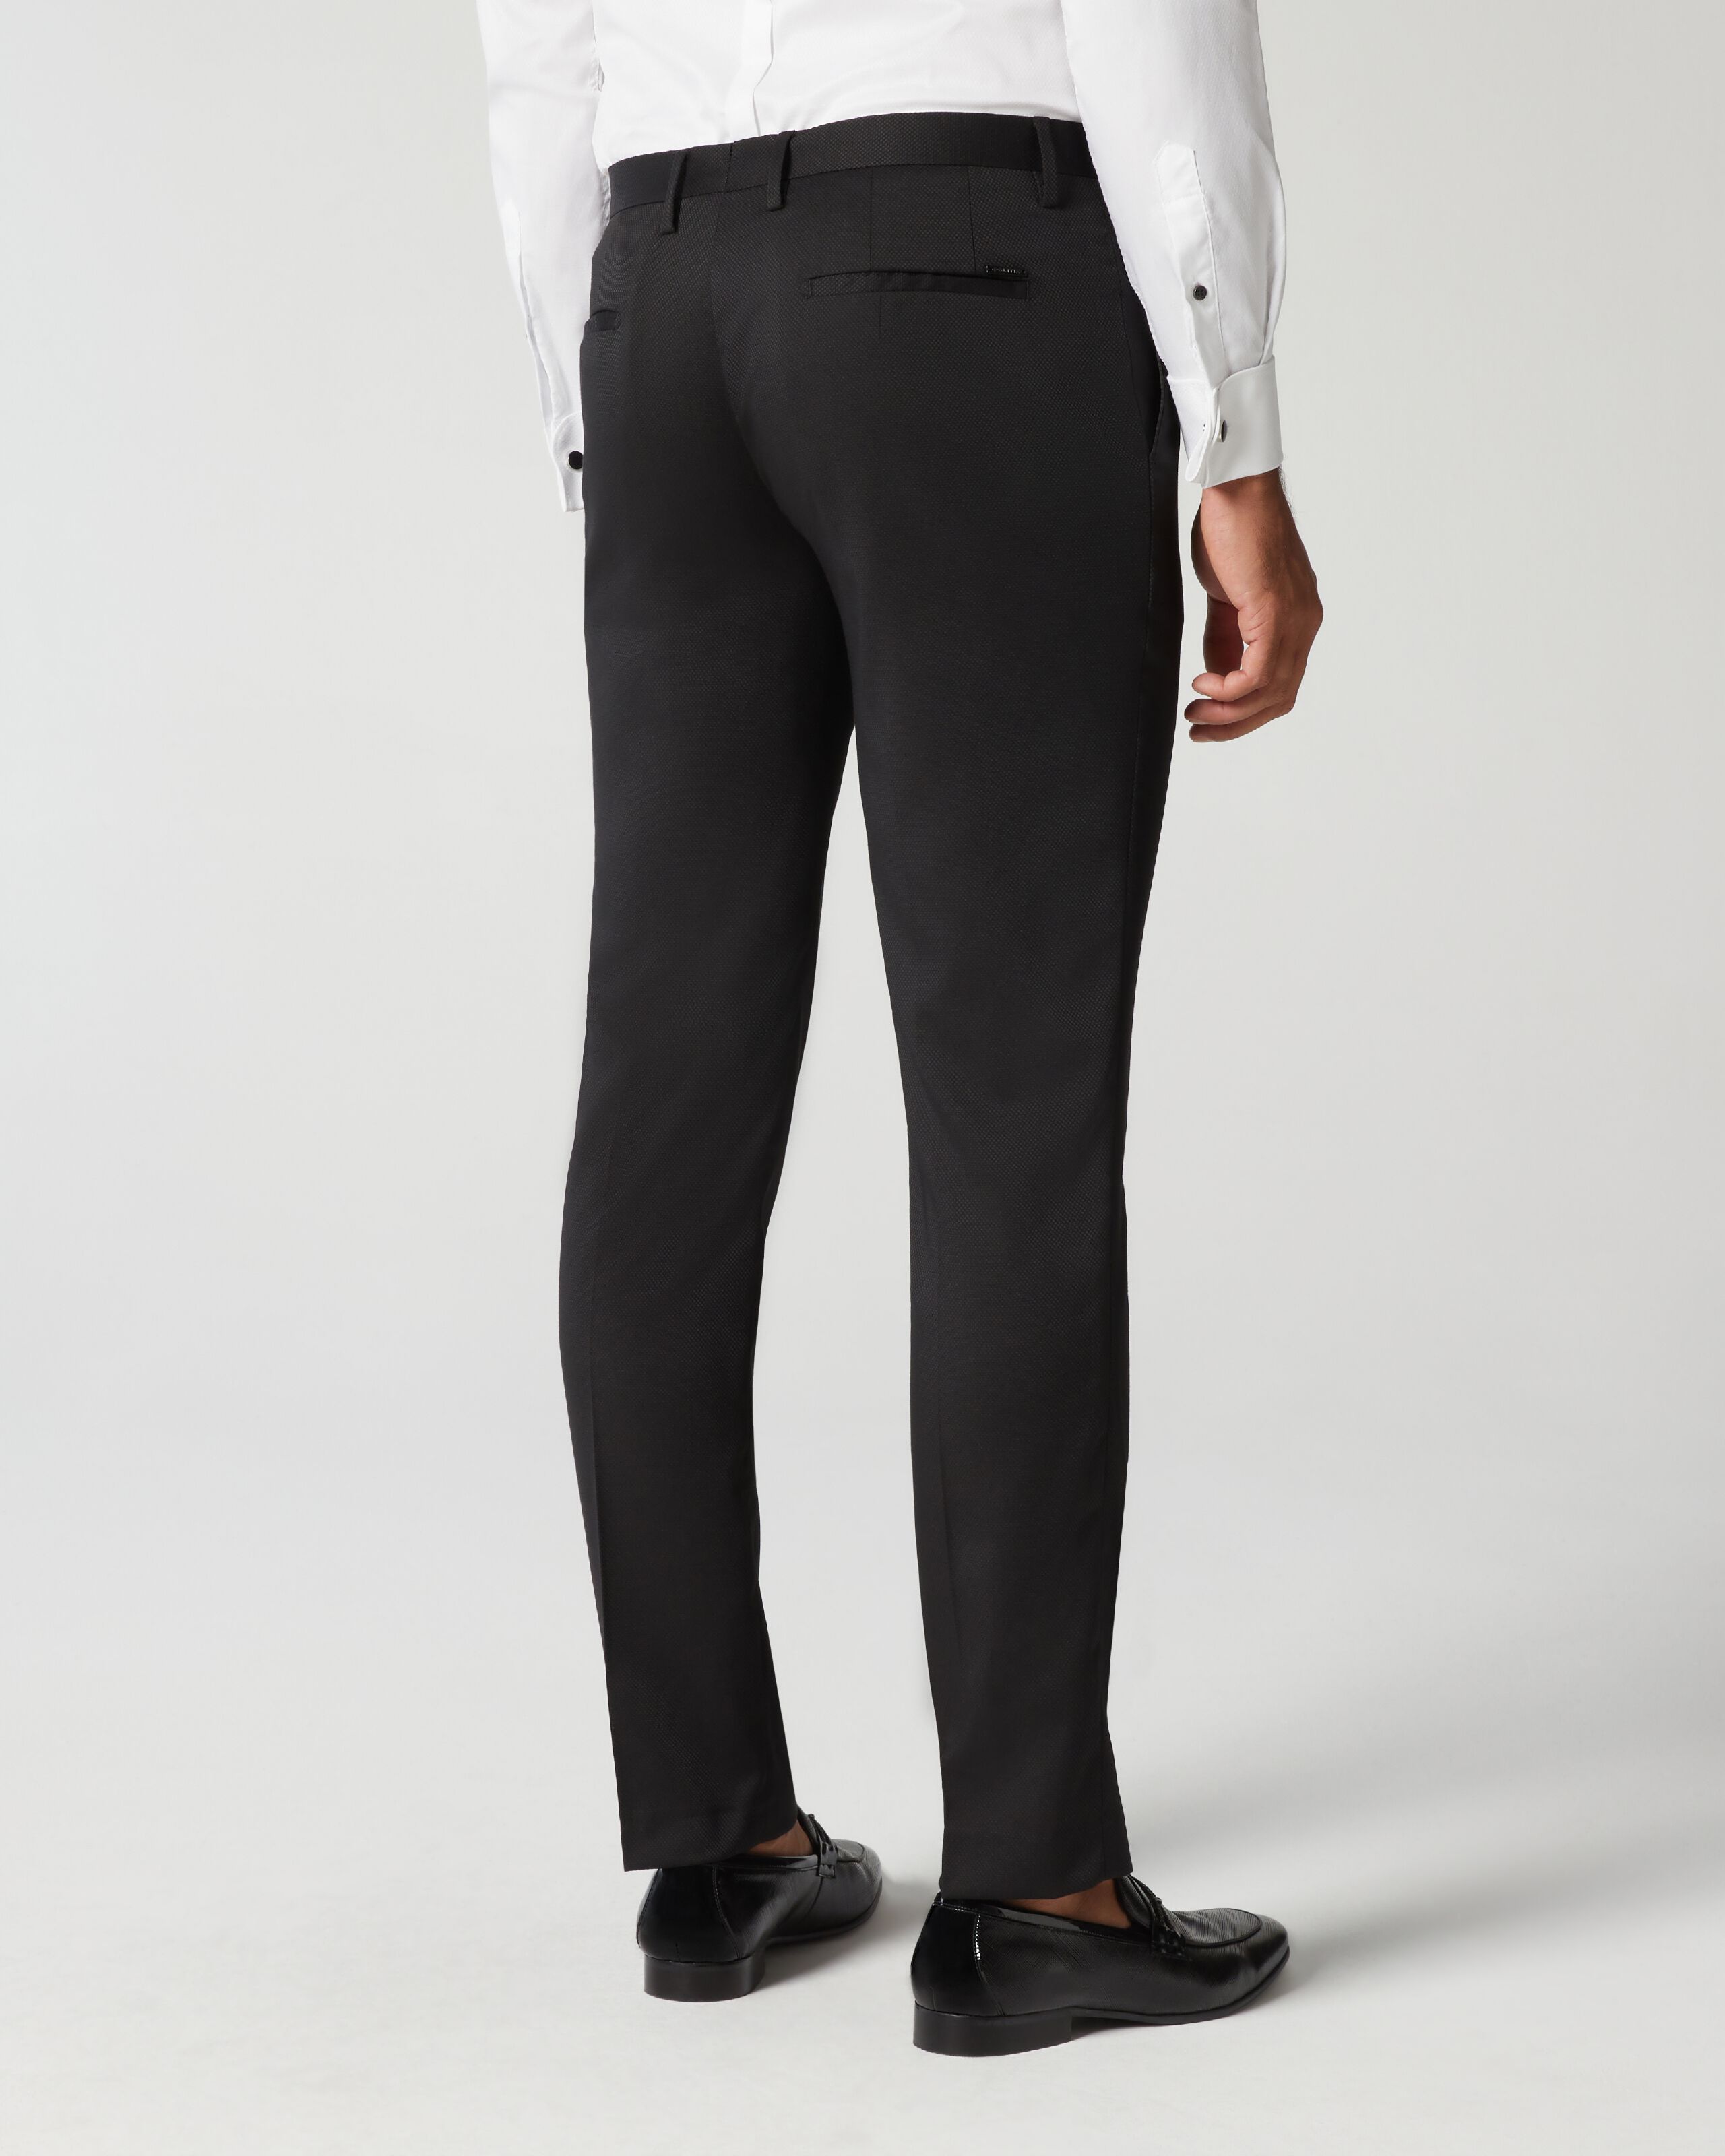 Black Suit Pants Loose Fit Trousers Wide Leg Soft Acetate Pants Neza Studio  Long Trousers Unisex Pants Minimalist Style - Etsy